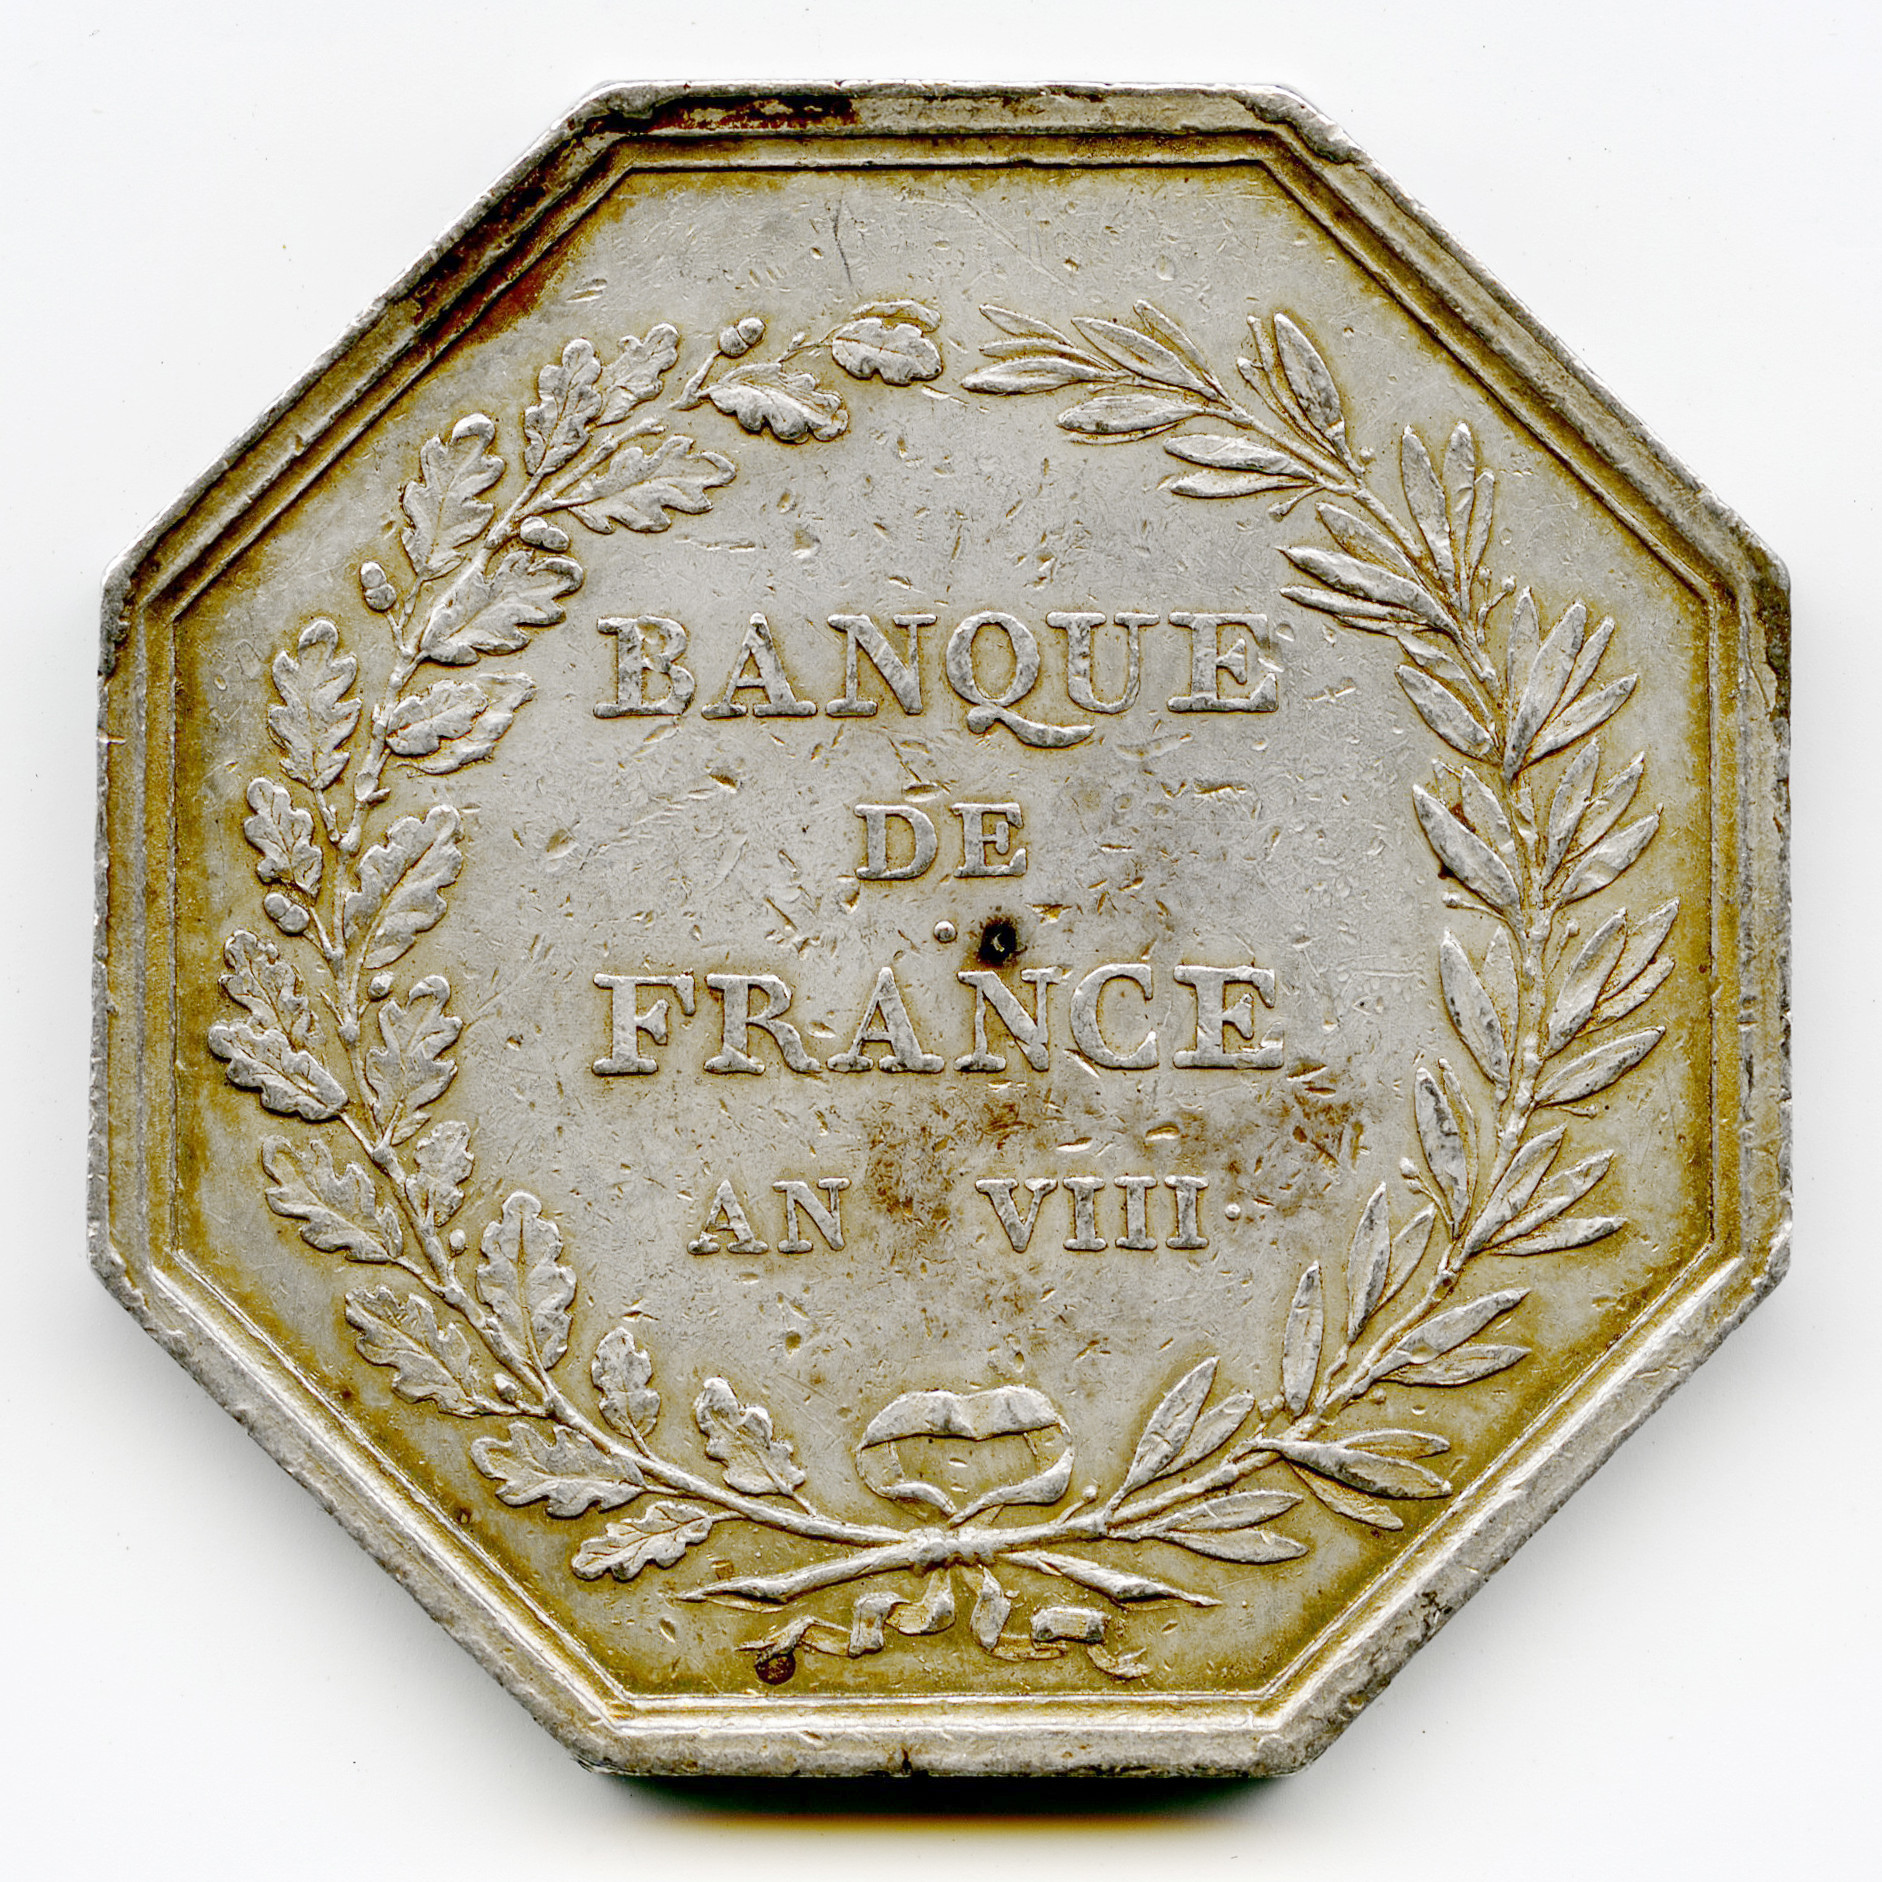 Banque de France - Jeton argent revers